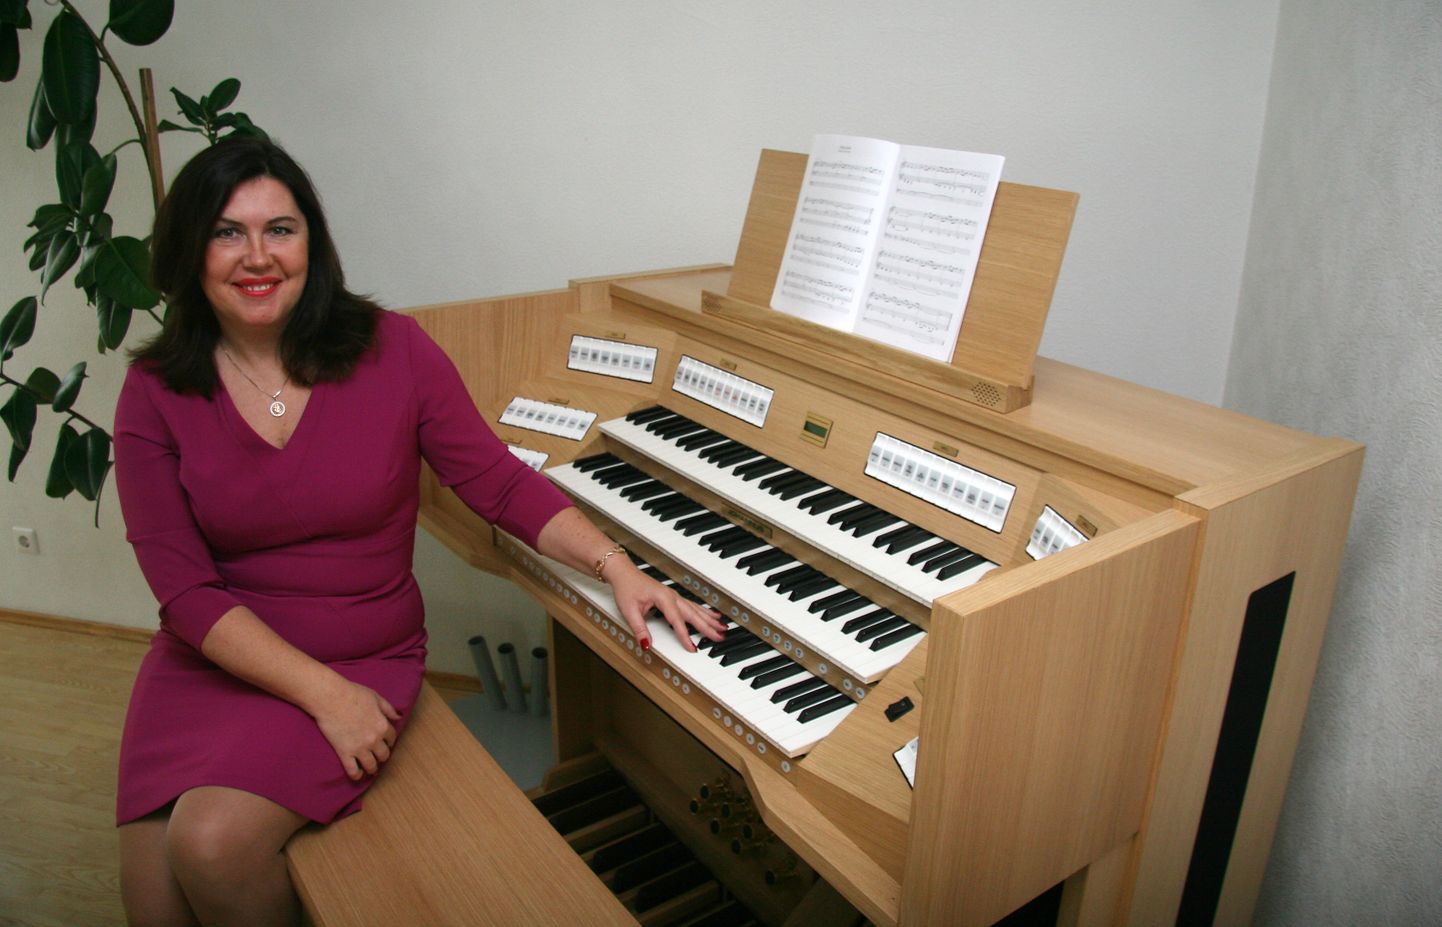 Преподаватель органной музыки Светлана Кекишева уверена, что новый инструмент откроет новые возможности для всей школы.